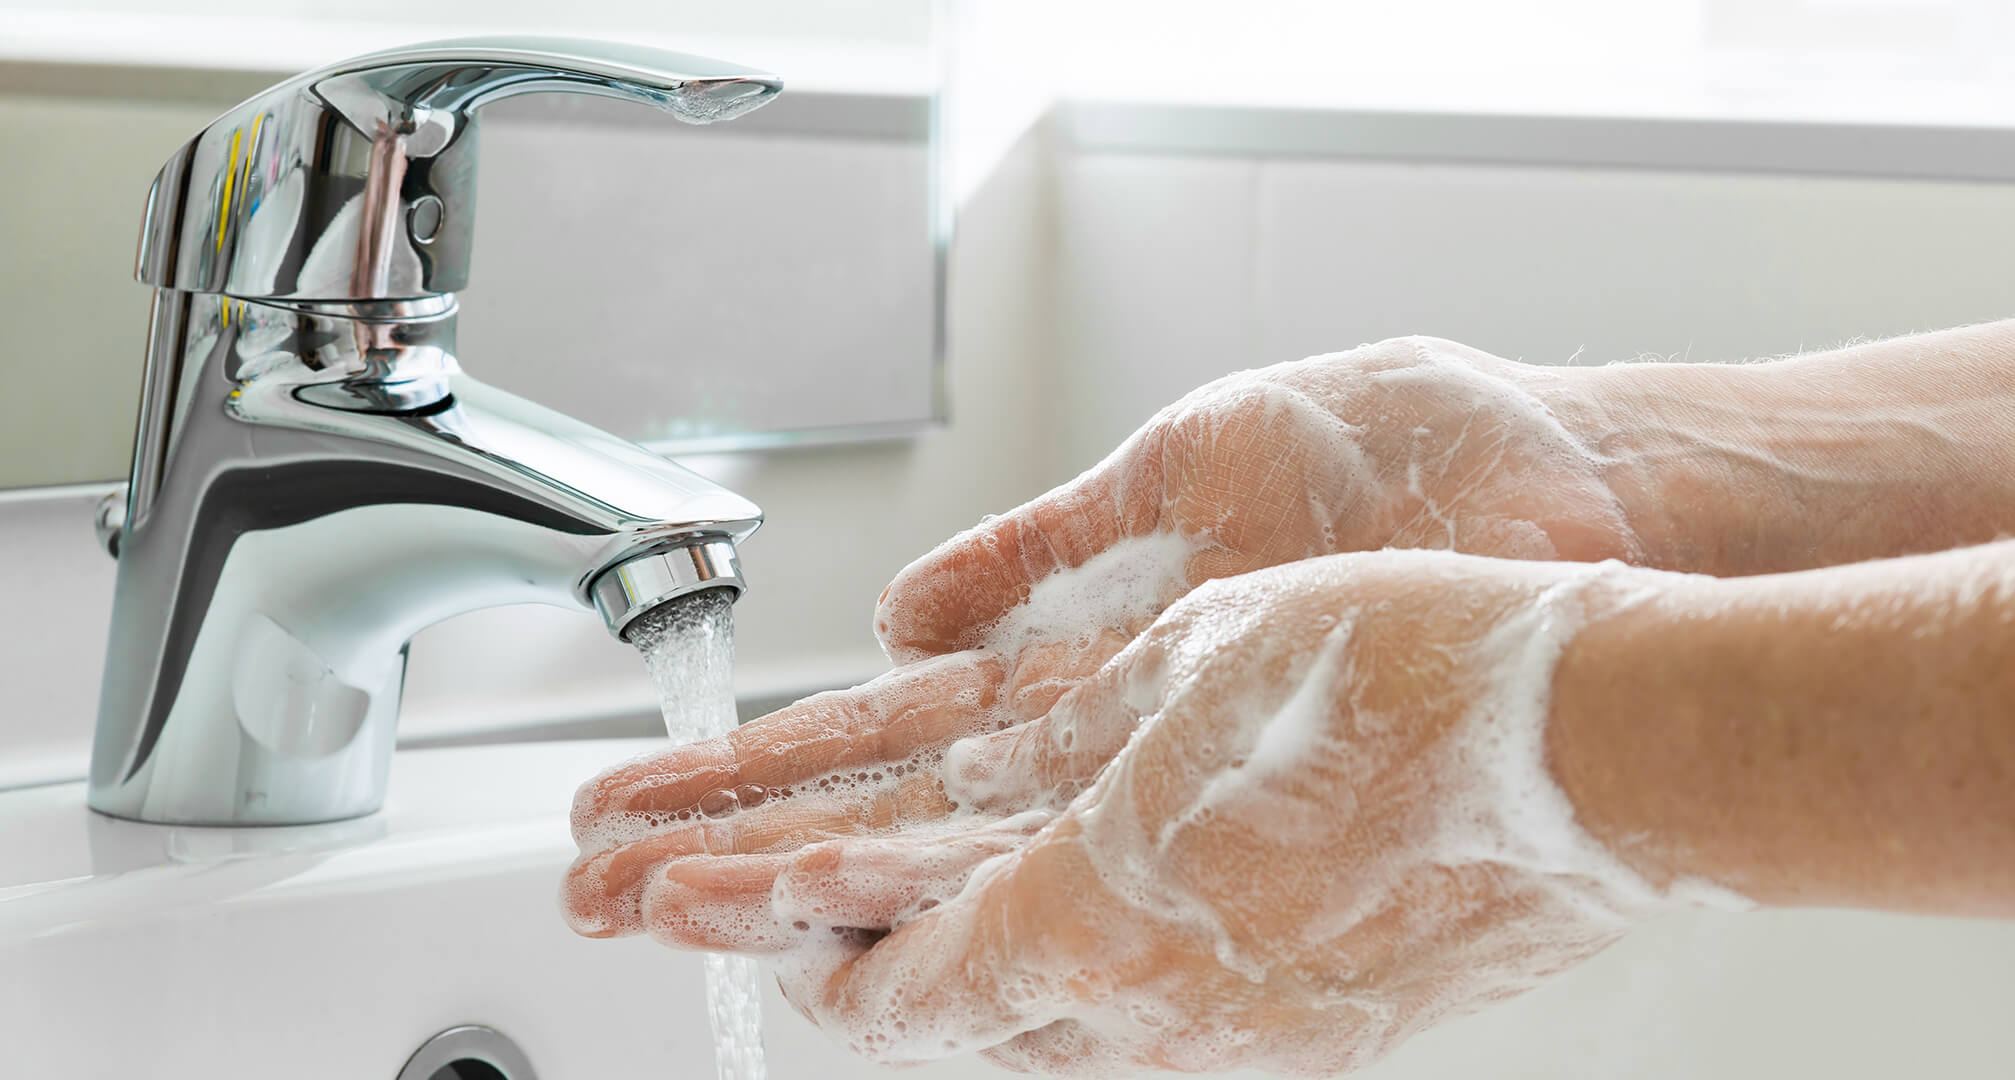 handen wassen met zeep onder de kraan van de gootsteen